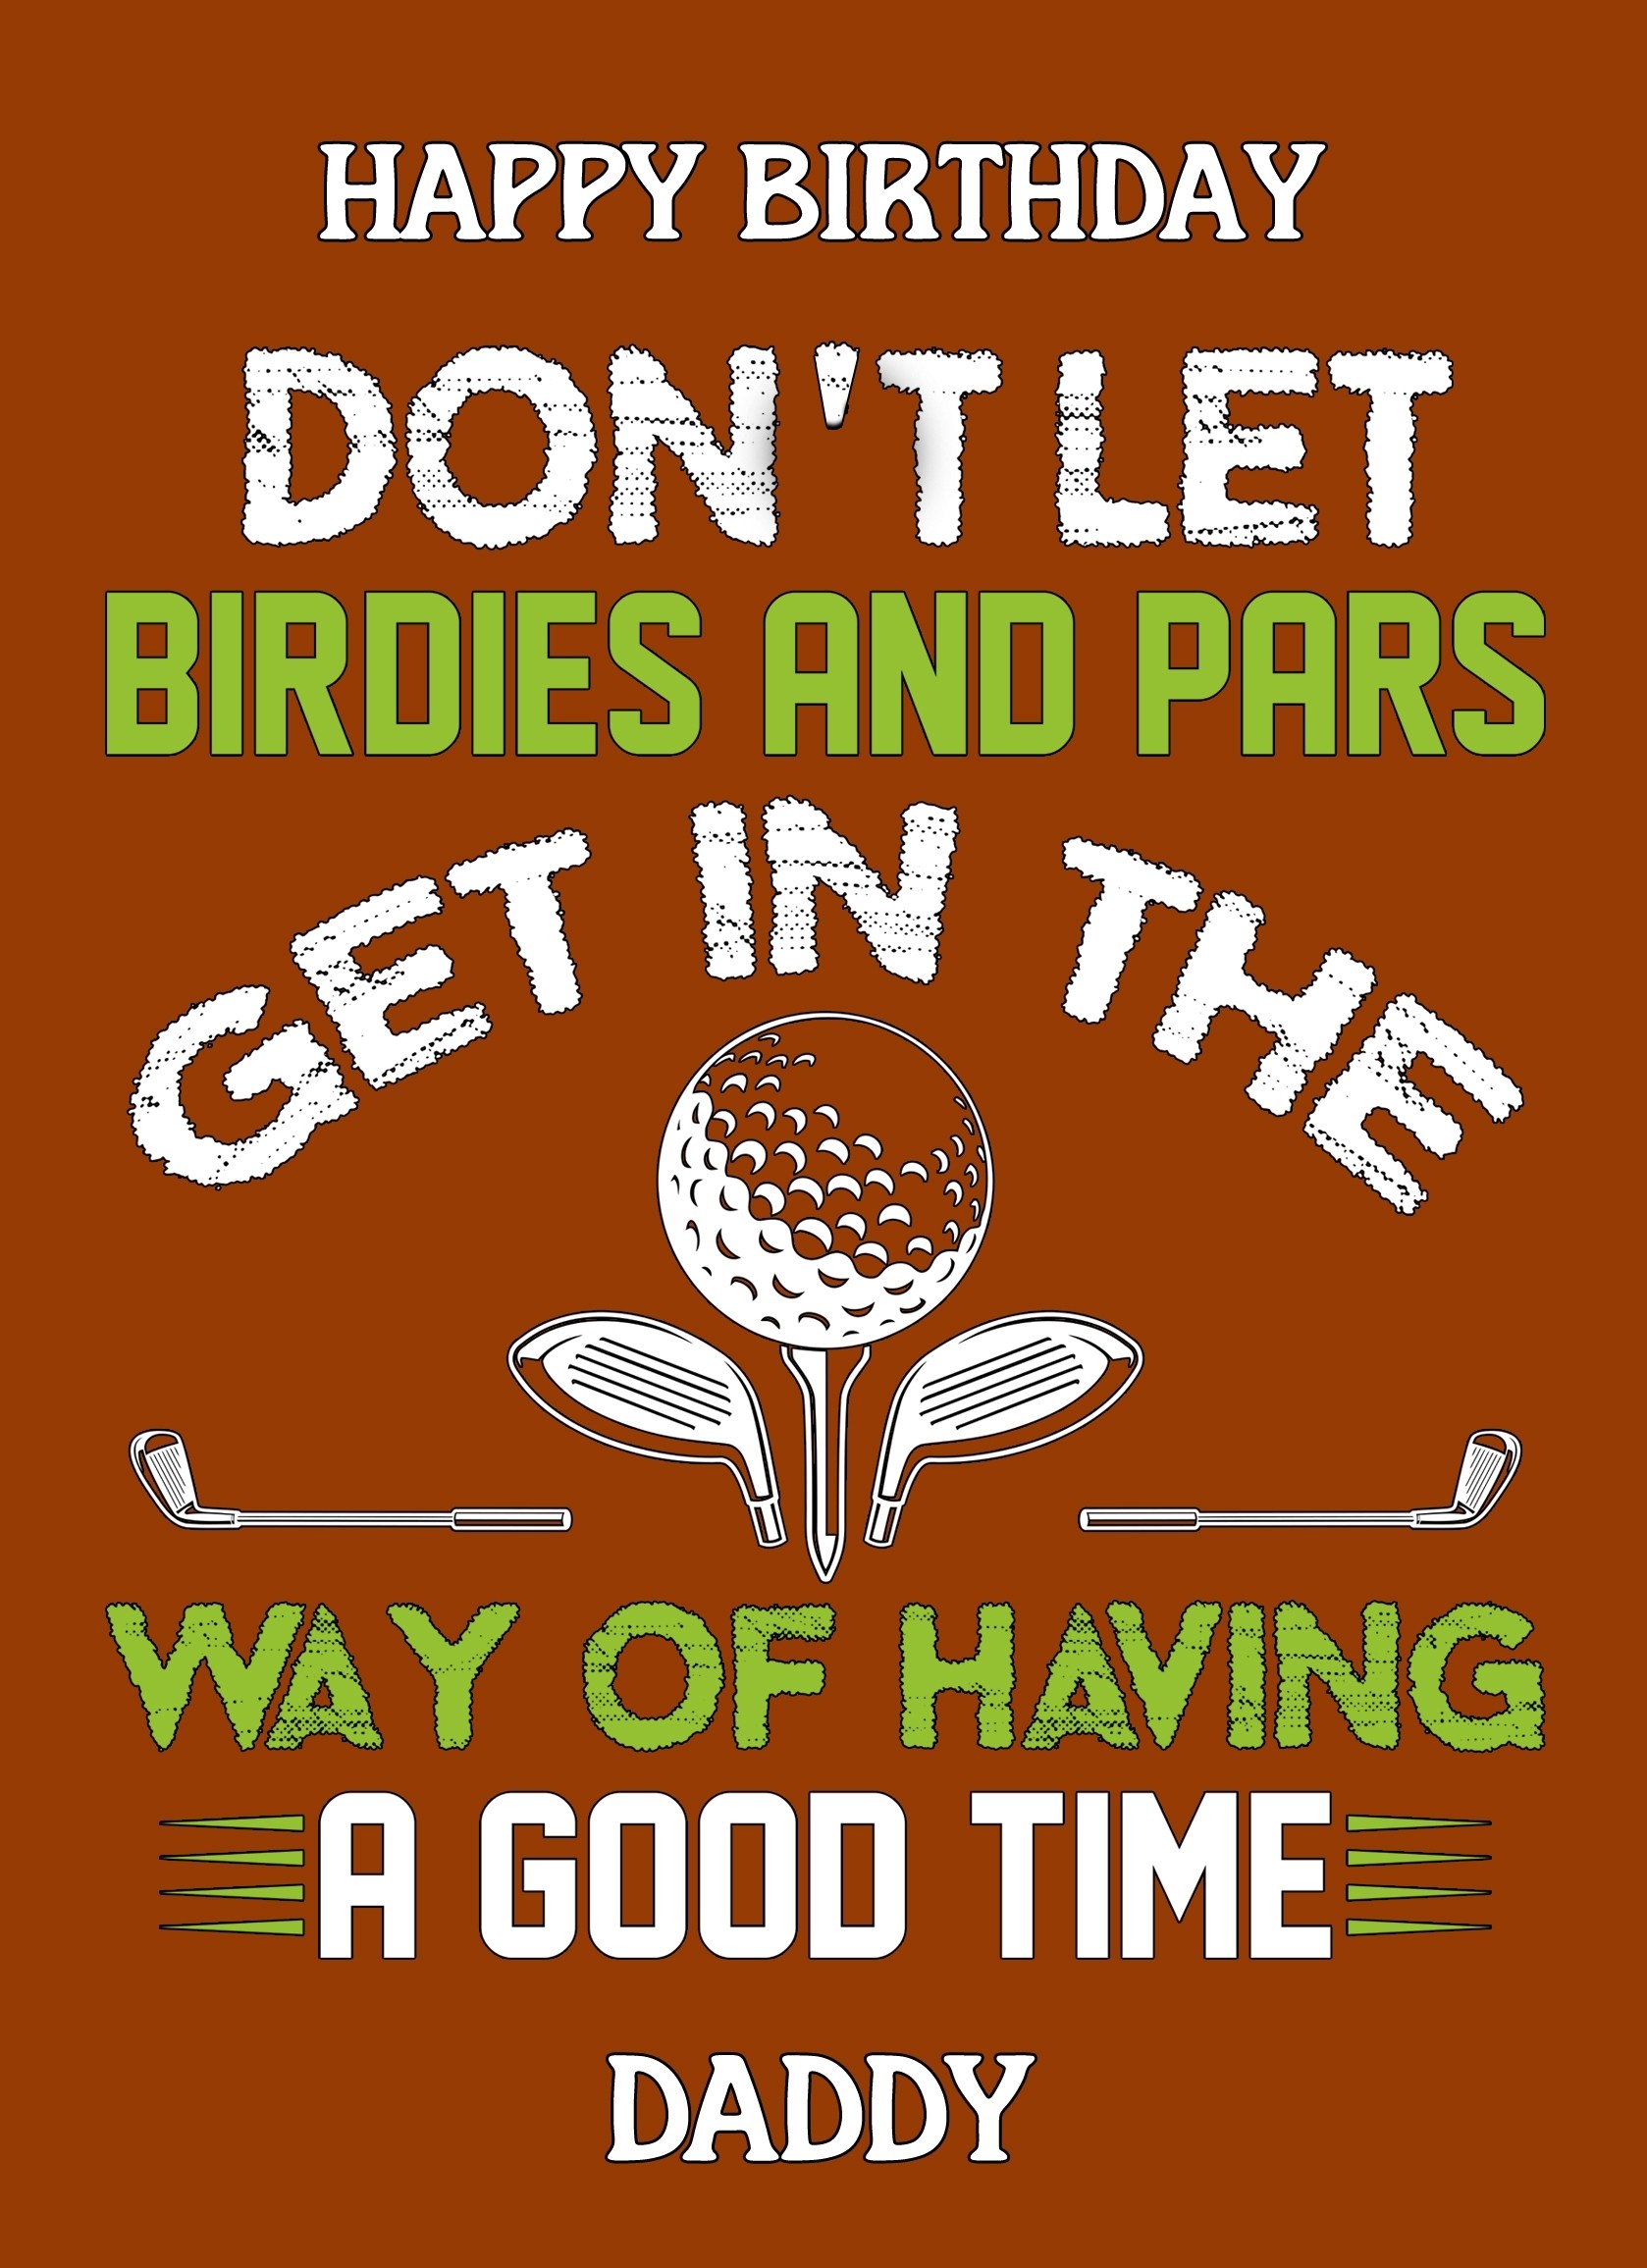 Funny Golf Birthday Card for Daddy (Design 3)